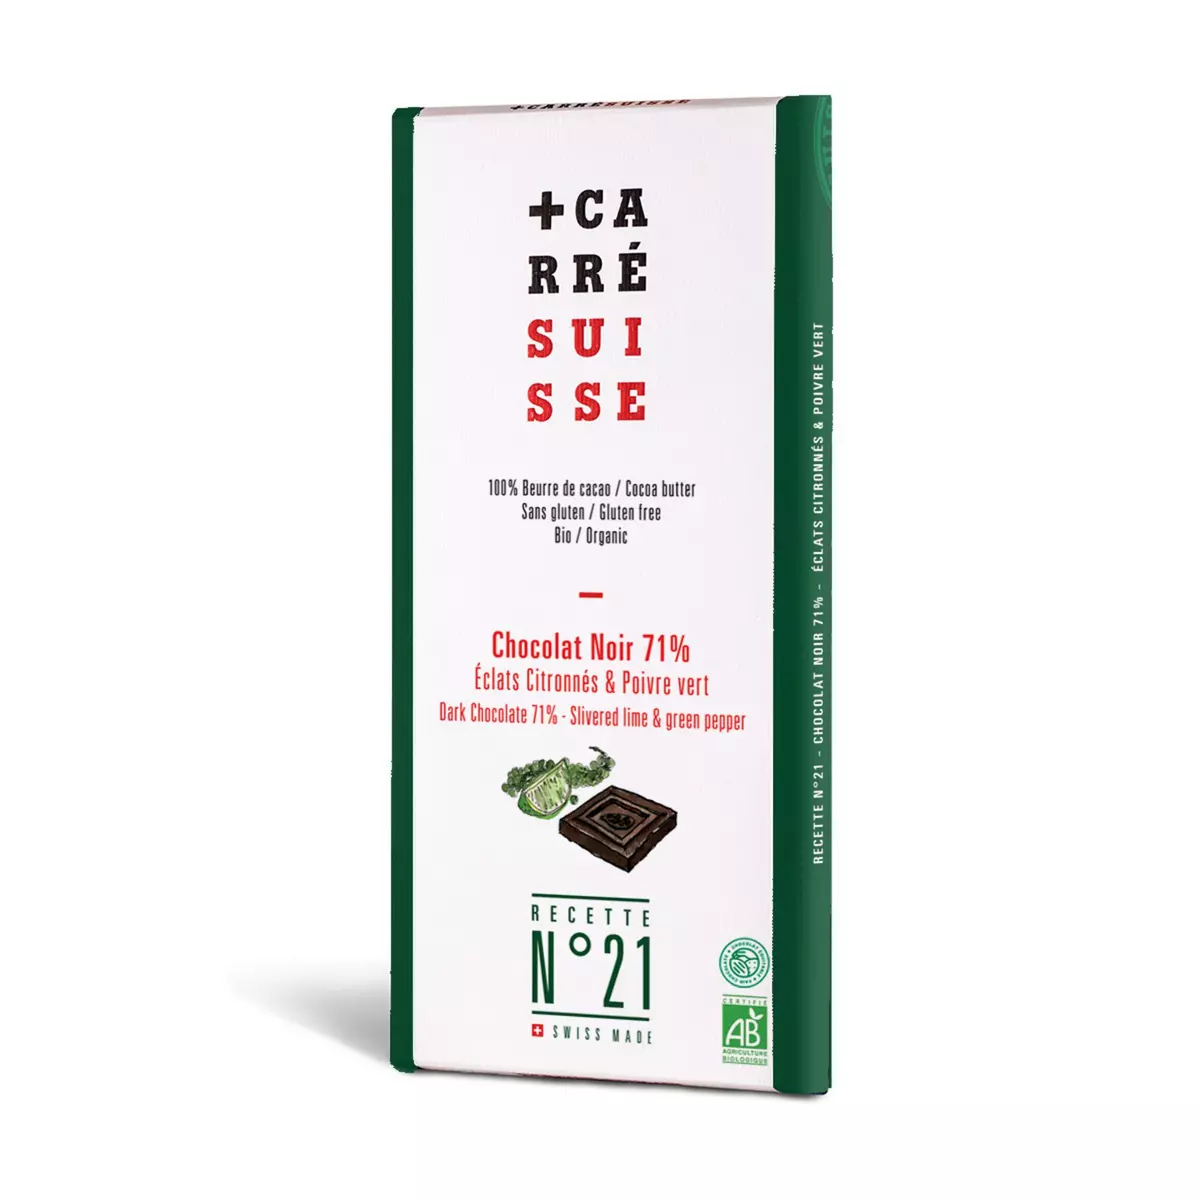 CARRE SUISSE Tablette de chocolat noir 71% bio éclat citron poivre vert 1 pièce 100g